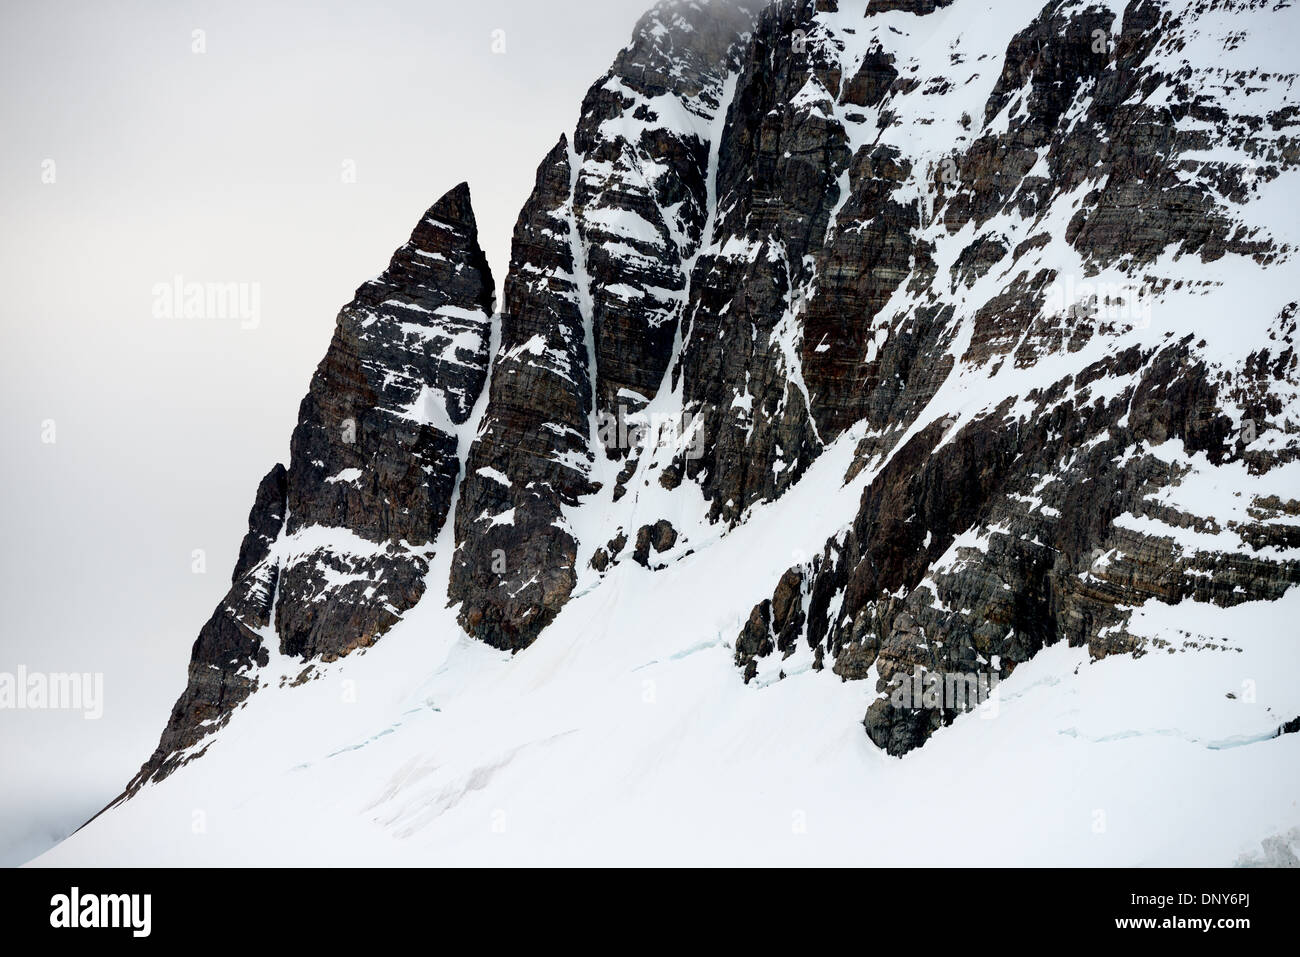 Antartide - ripide scogliere e rocce frastagliate rivestimento i bordi del canale di Lemaire sulla costa occidentale della penisola antartica. Il Lemaire Channel è talvolta indicata come "Kodak Gap' in un cenno al suo famoso vedute panoramiche. Foto Stock